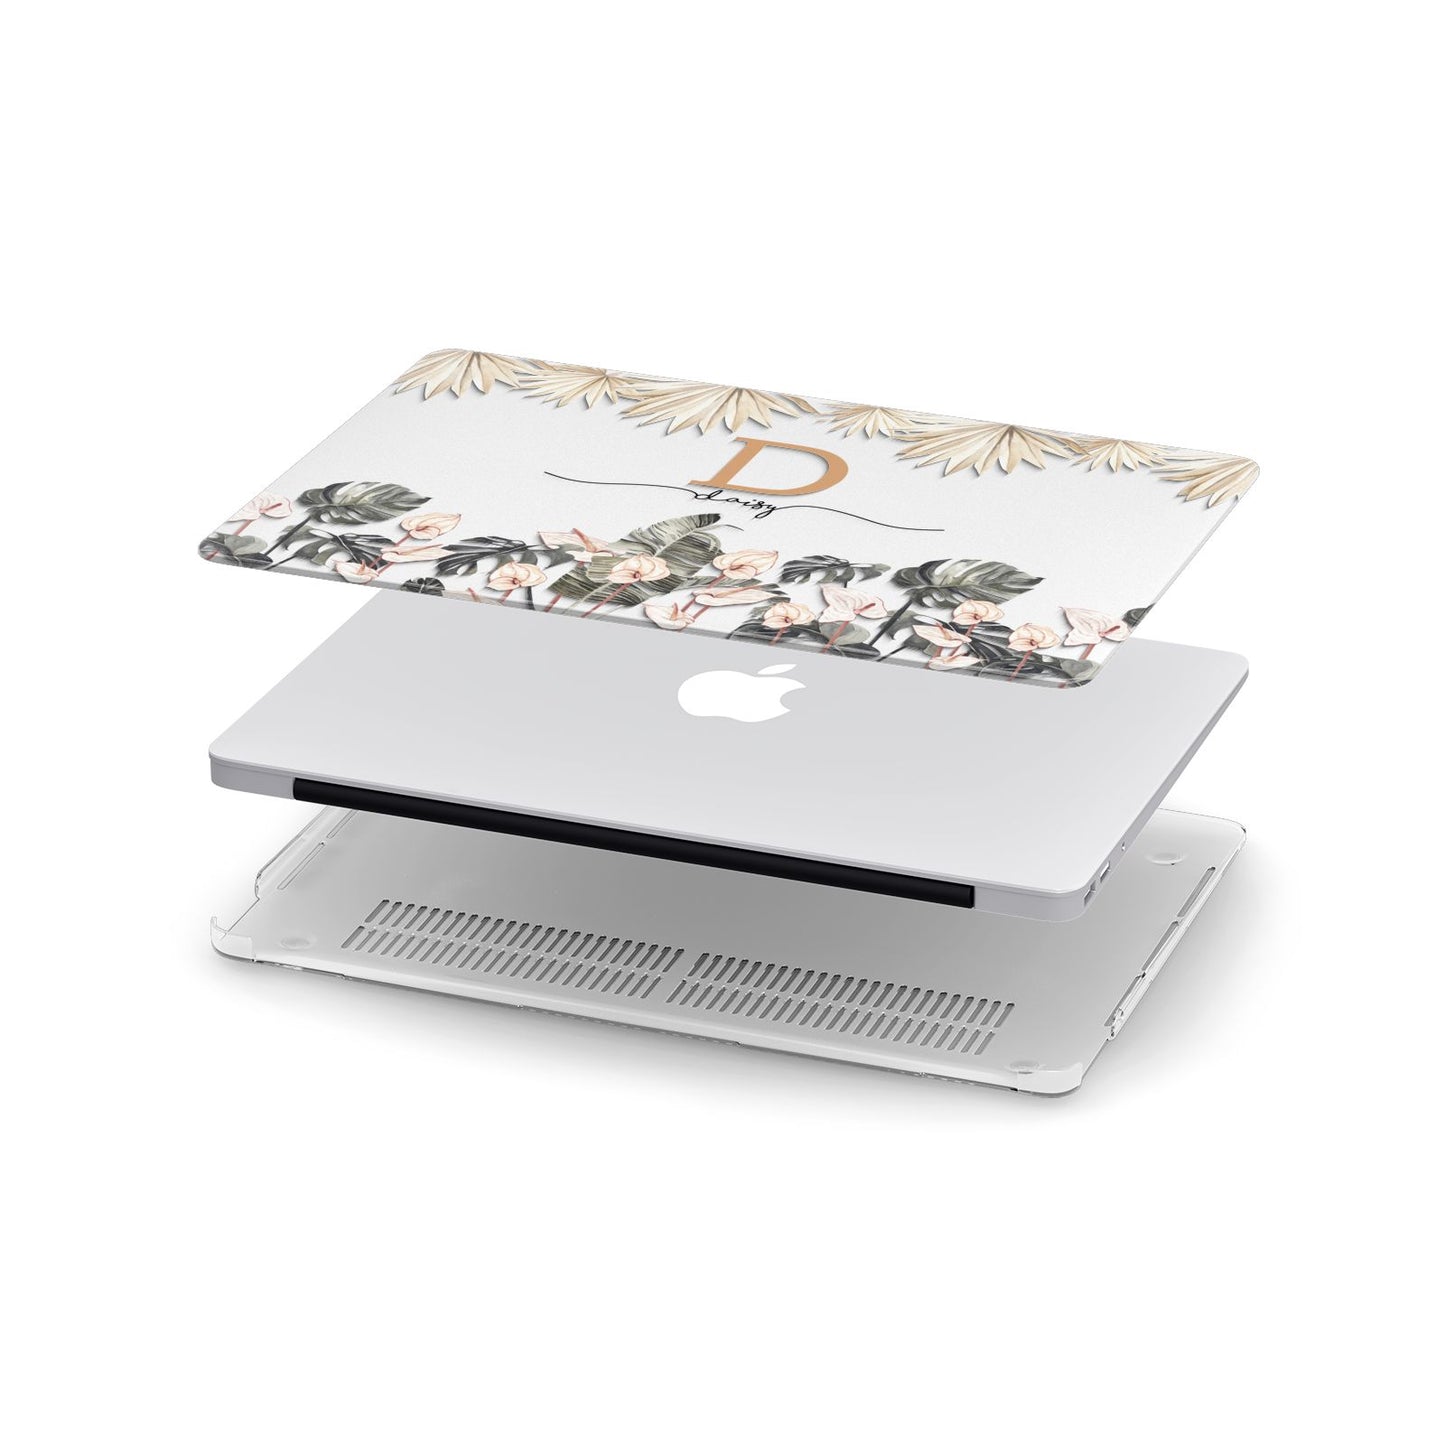 Personalised Dried Flowers Apple MacBook Case in Detail